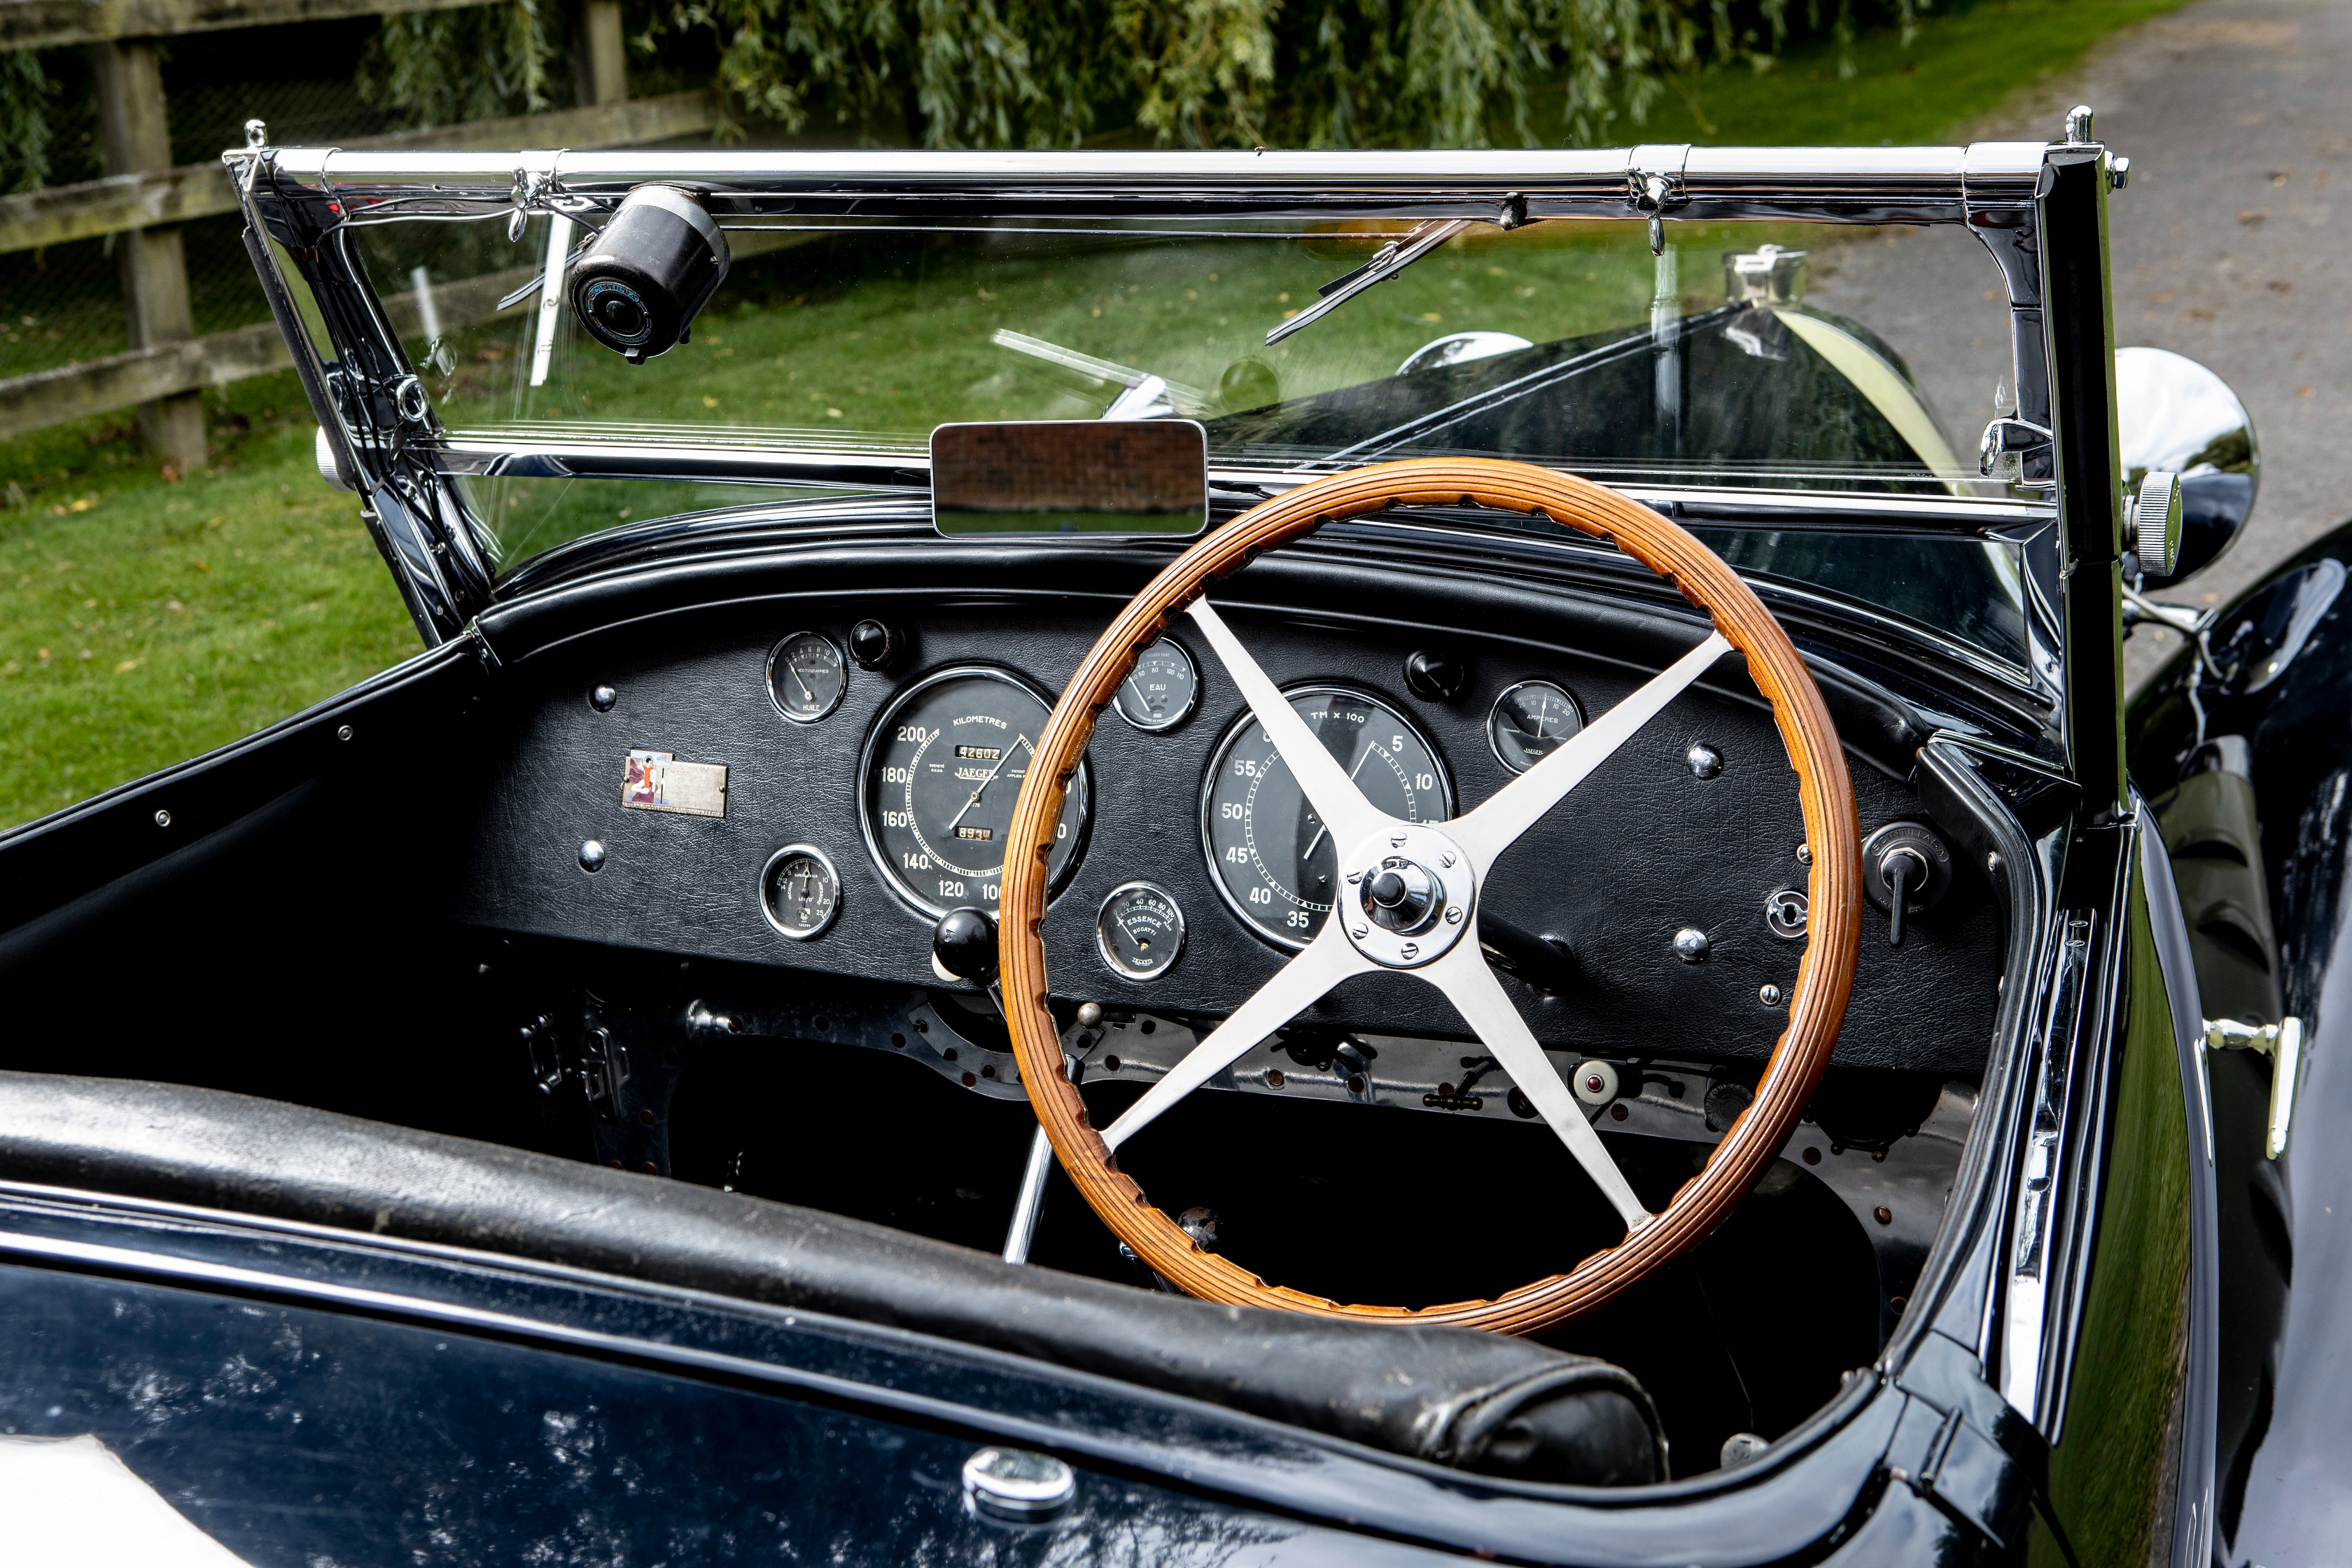 Bugatti Type 55 Super Sport (chasis 55221). Un entusiasta de Bugatti pagó 5,07 millones de dólares por un Type 55 de 1931 en París en febrero pasado. Esto convirtió al vehículo con el número de chasis 55221 en el automóvil más caro que se vendió en una de las subastas de Rétromobile 2020. Se trata de un vehículo excepcional: Louis Chiron y el conde Guy Bouriat-Quintart lo co-condujeron como un coche de carreras de fábrica en las 24 Horas de Le Mans en 1932. El propietario posterior puso una carrocería Figoni única en el chasis. Con este cuerpo, el Type 55 permaneció en la familia durante más de 60 años. Su motor turboalimentado de 8 cilindros y 2,3 litros produce una potencia de unos 160 CV.